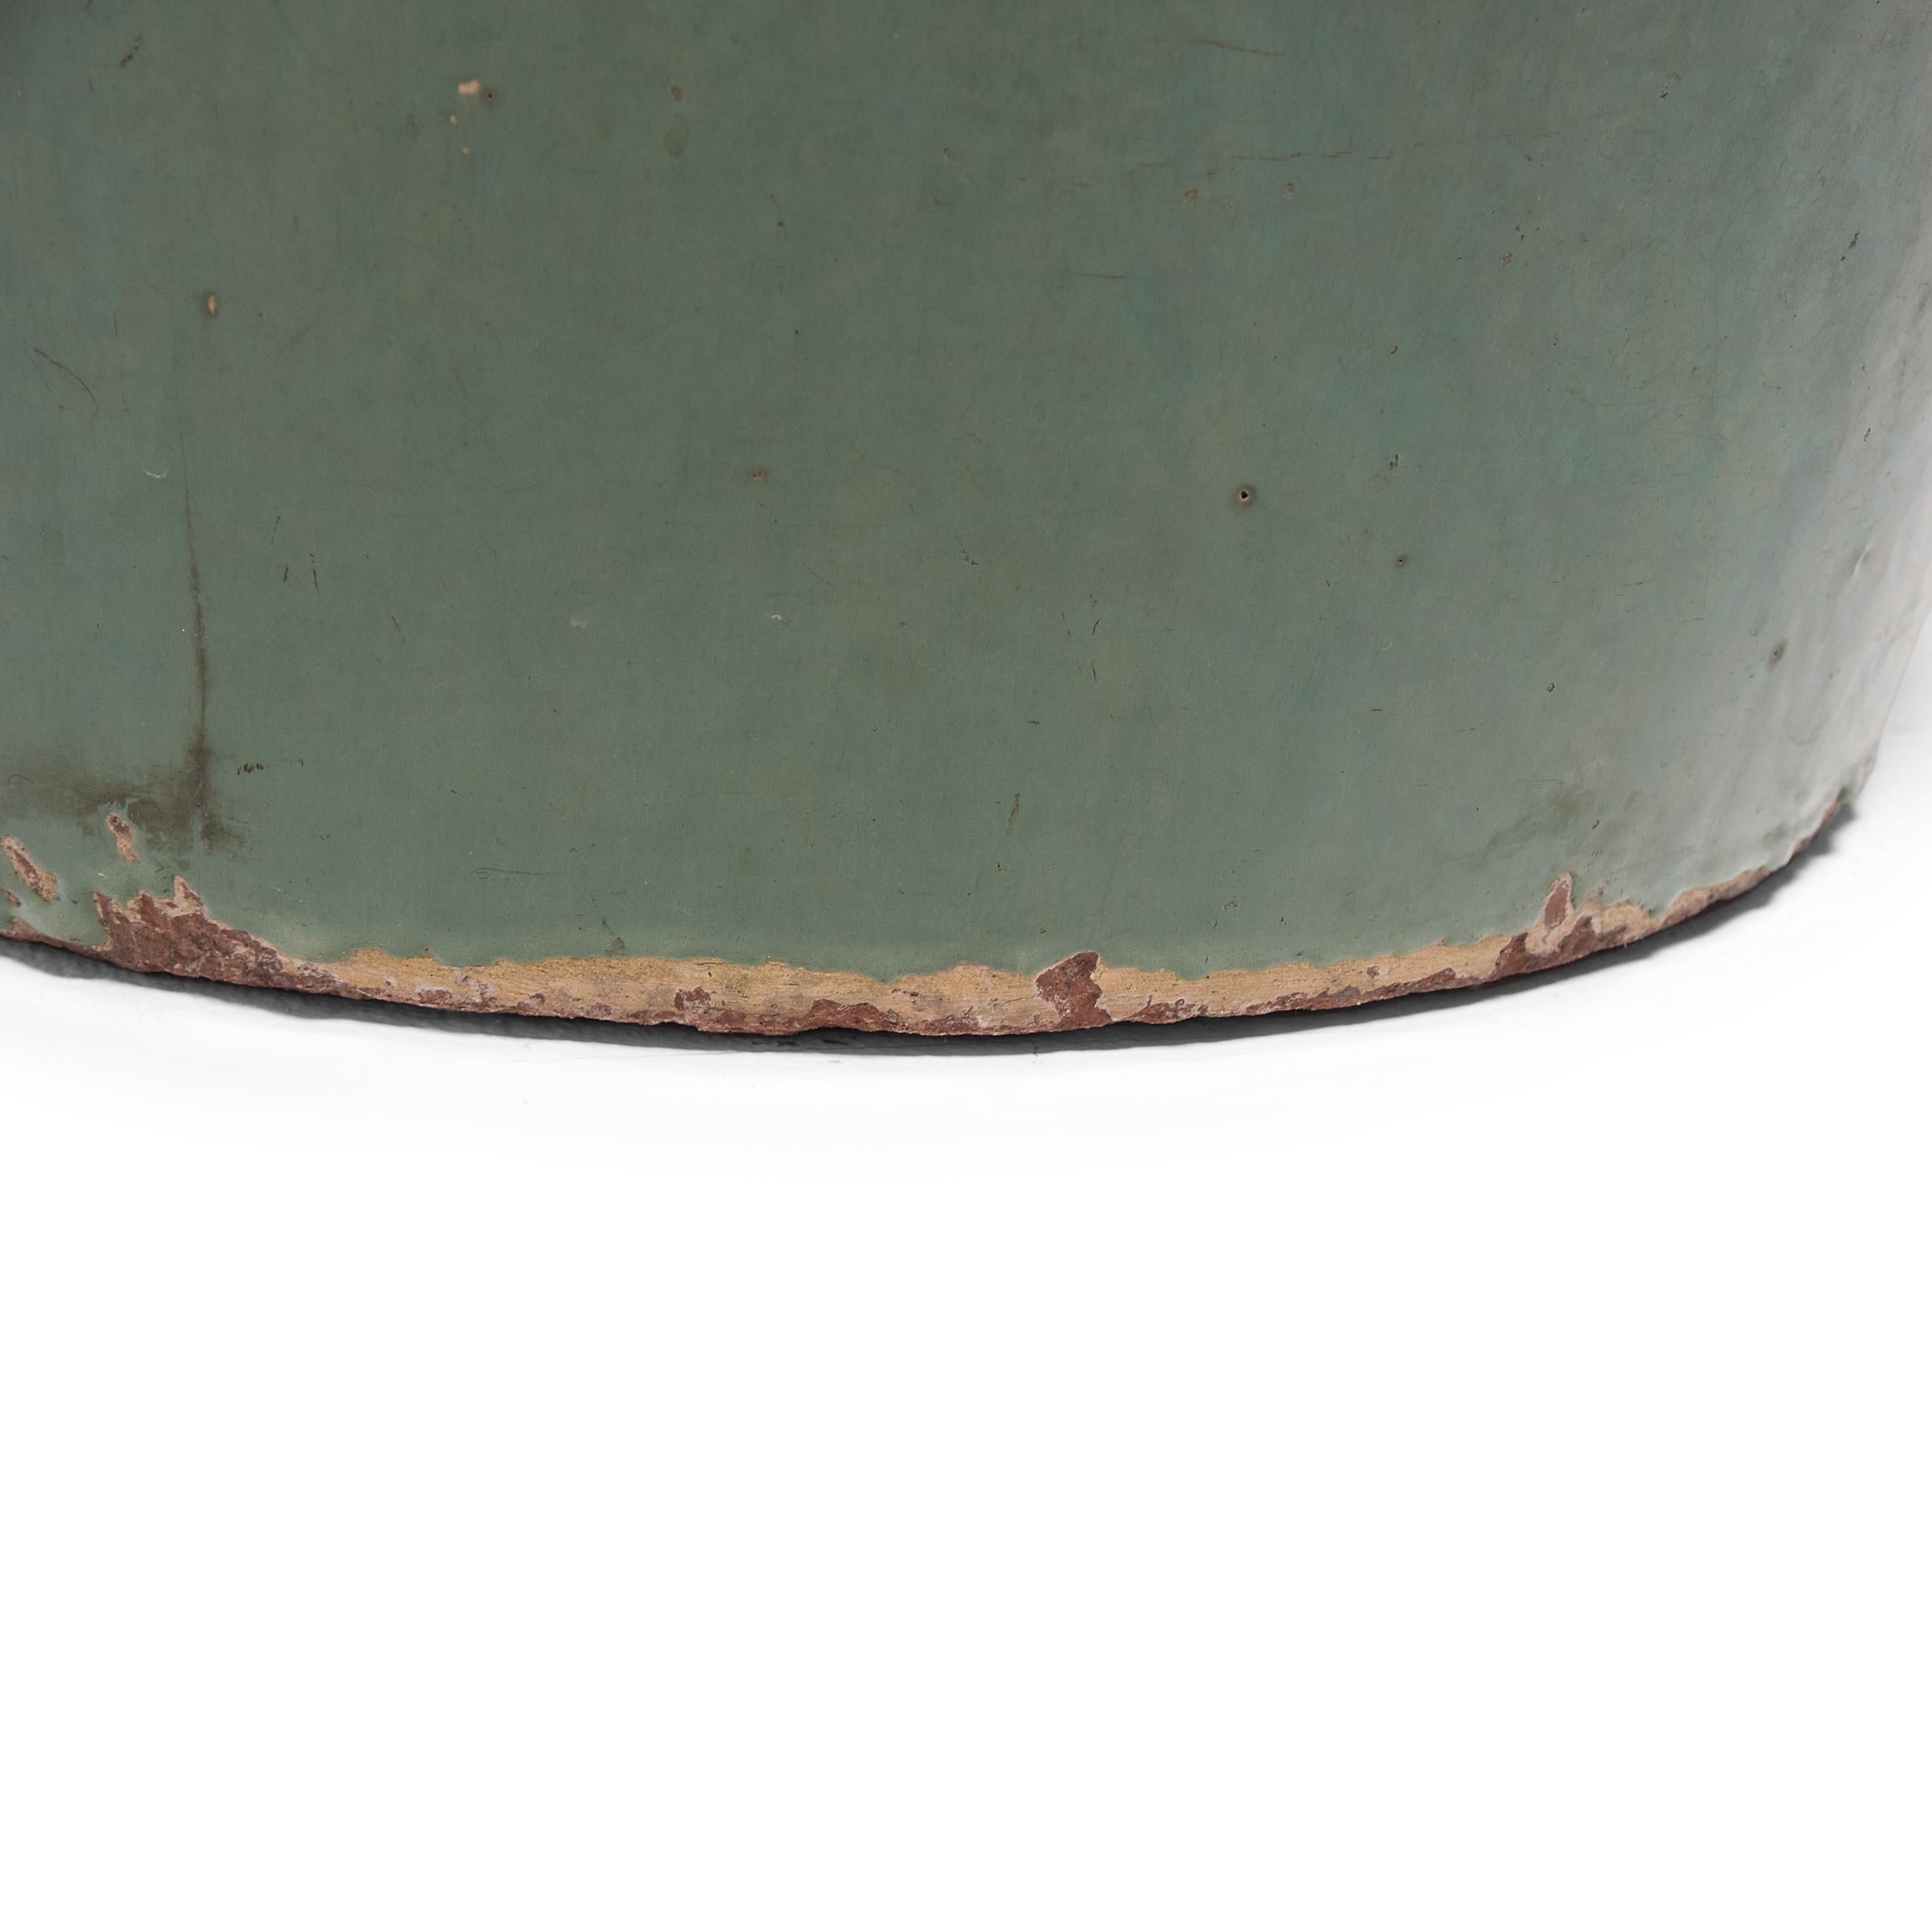 Ceramic Chinese Celadon Pickling Jar, c. 1900